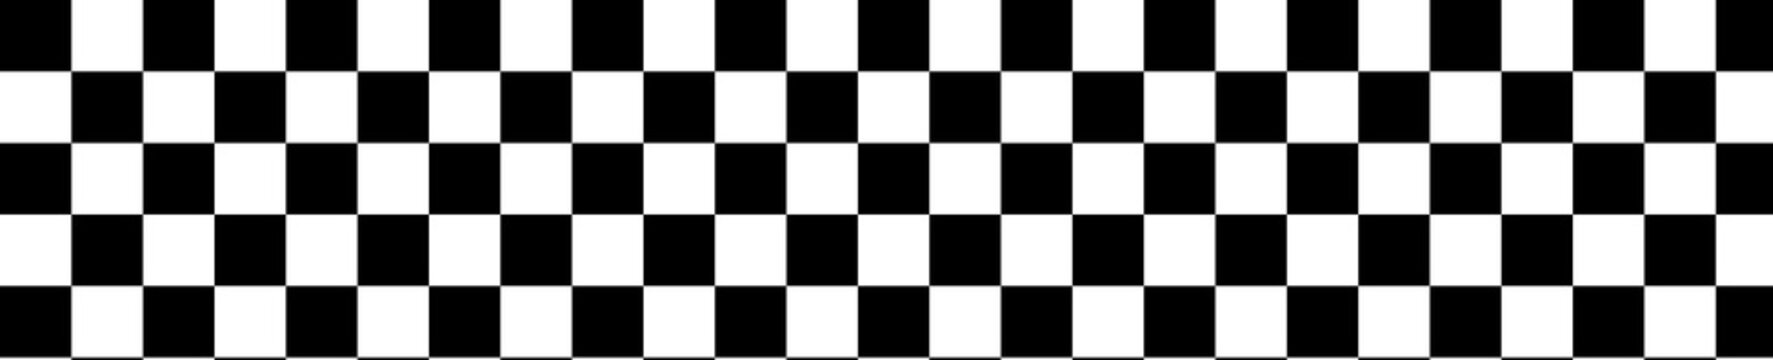 Checkerboard pattern background